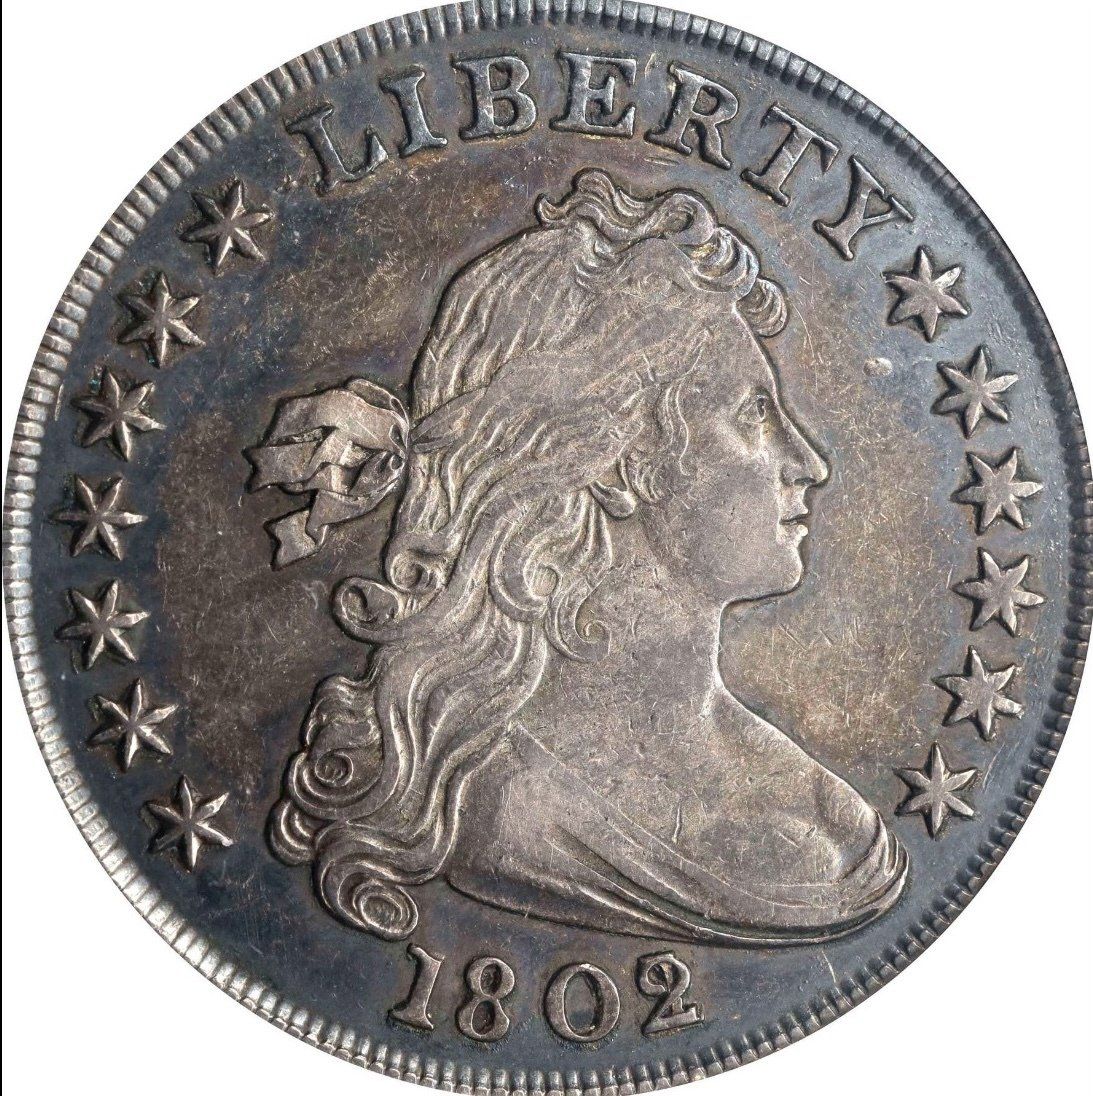 Carolina Collector Coins